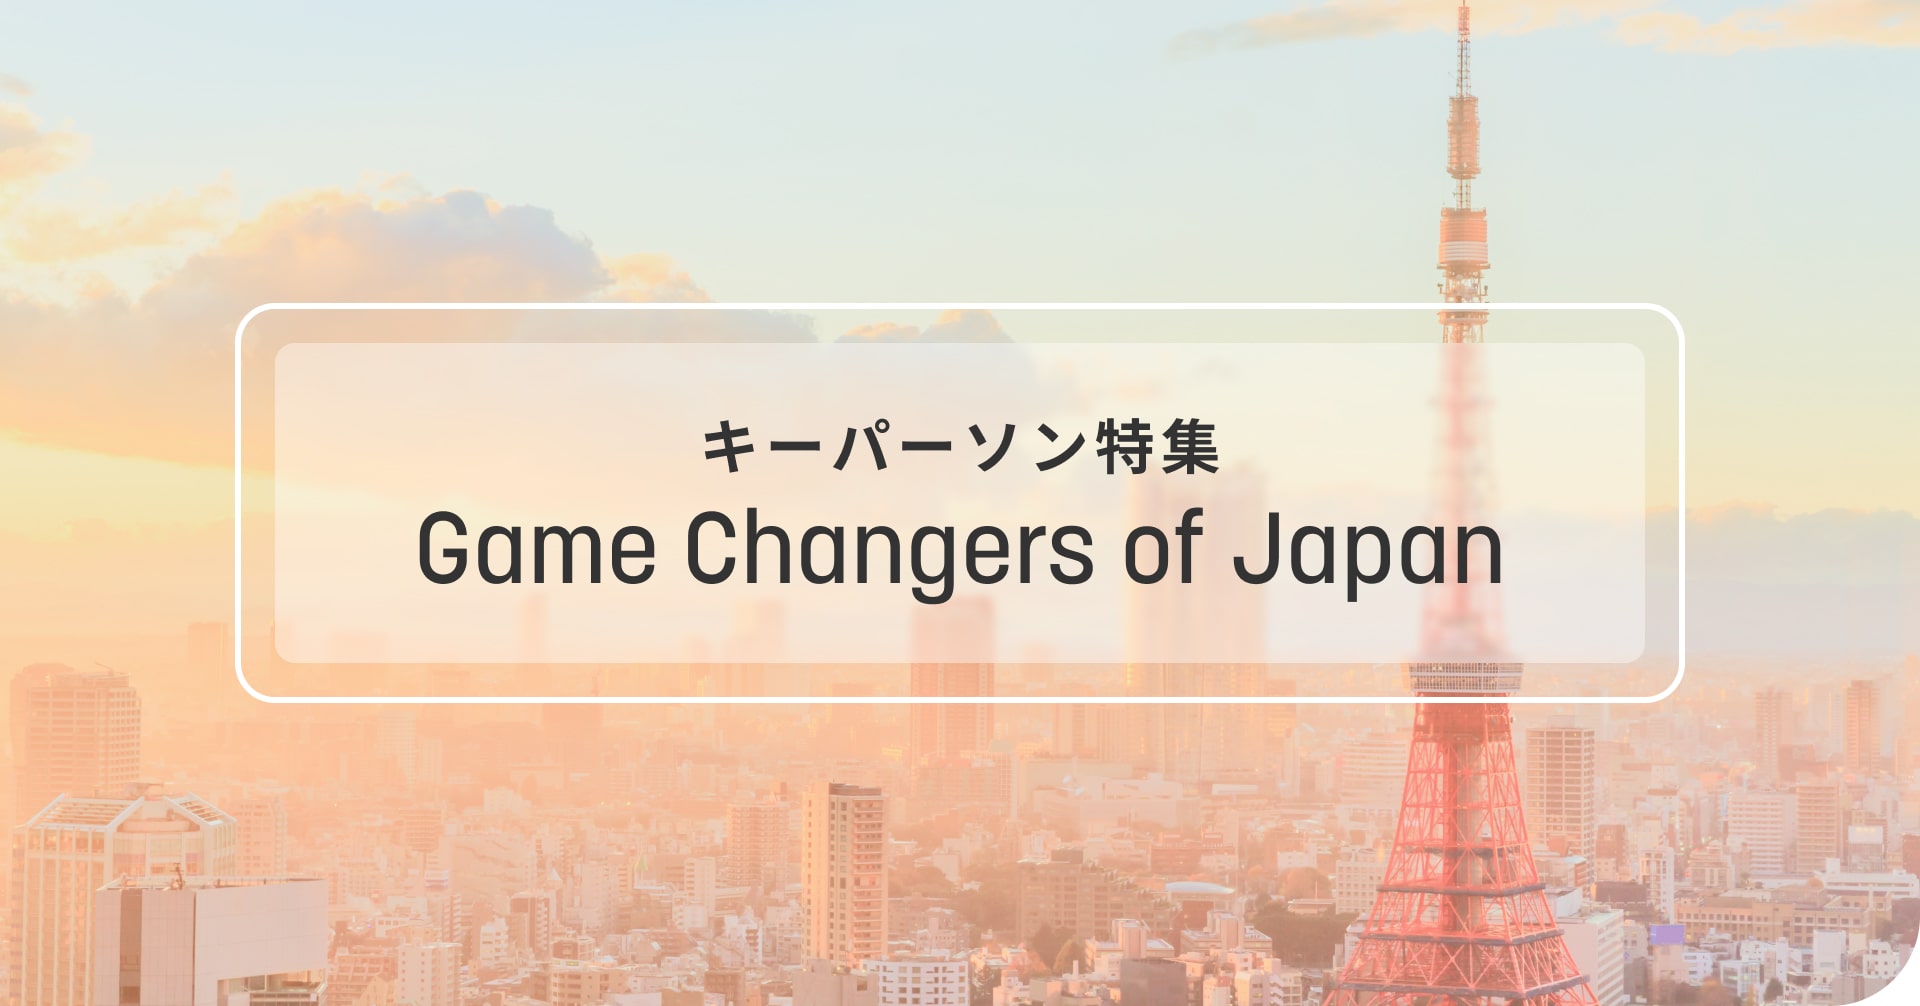 キーパーソン特集: Game Changers of Japan